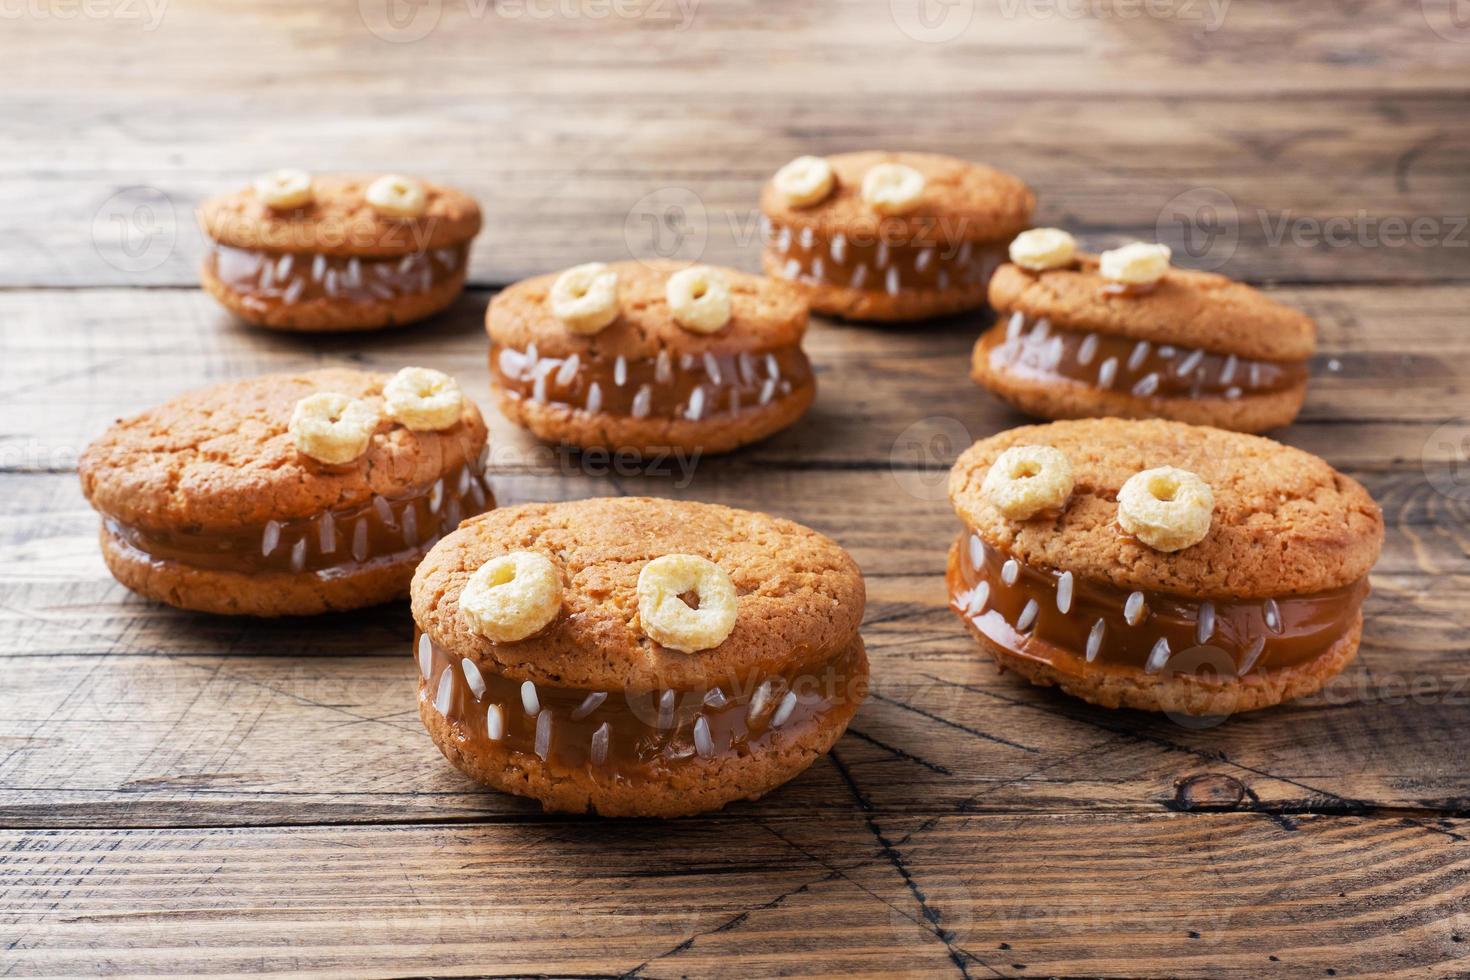 galletas con pasta de crema en forma de monstruos para la celebración de halloween. divertidas caras caseras hechas de galletas de avena y leche condensada hervida. foto